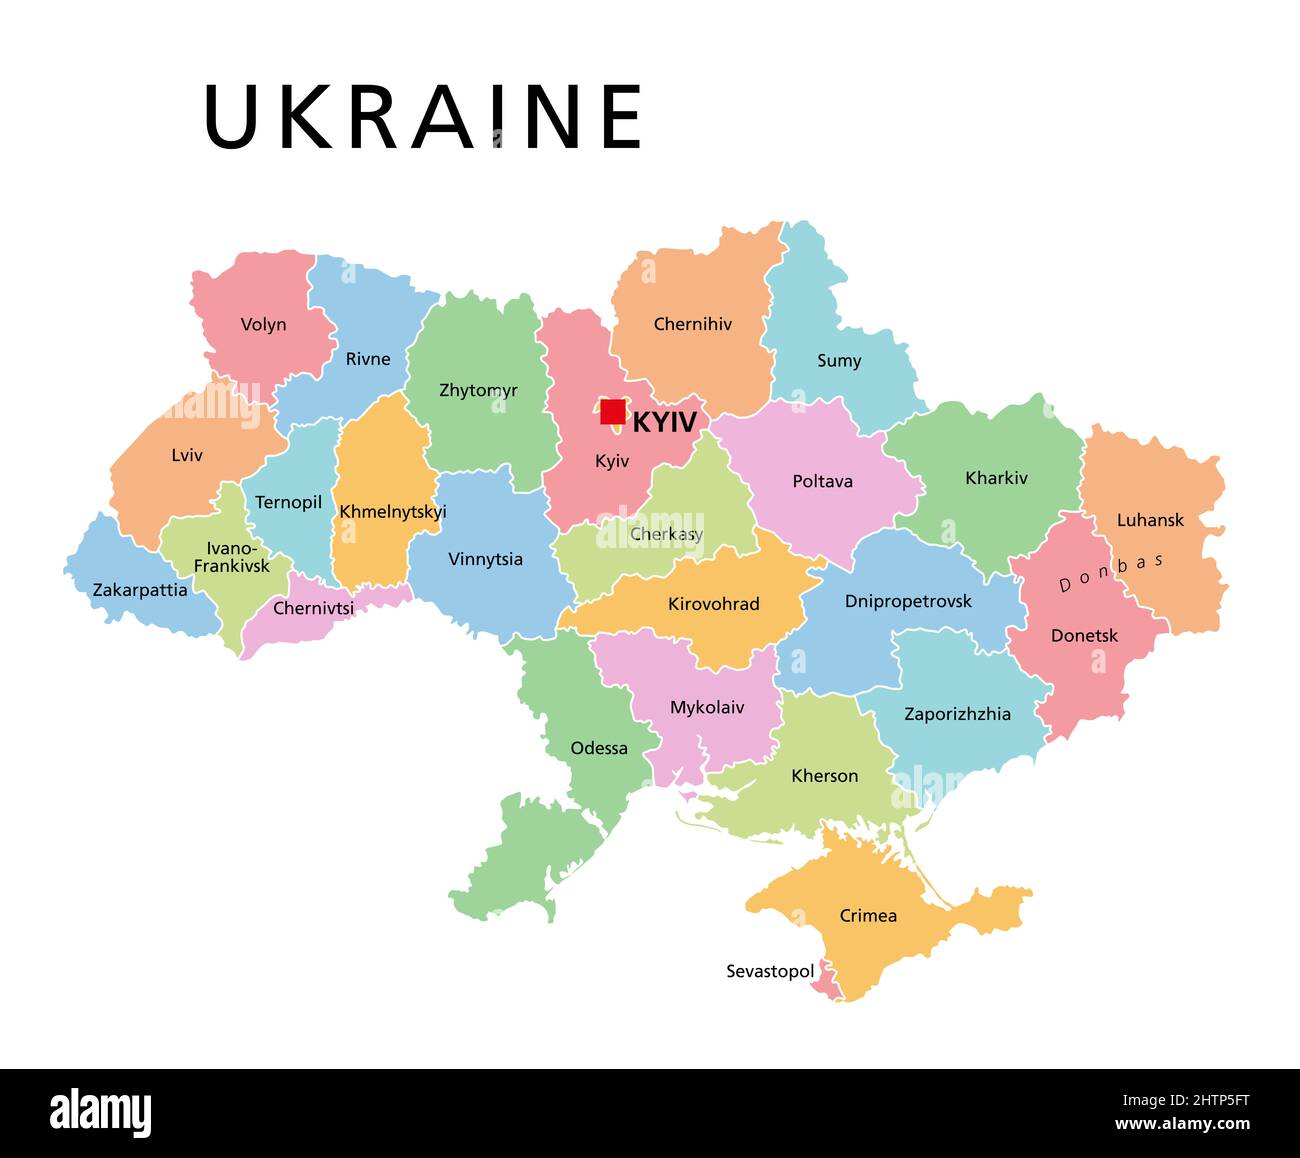 Ucraina, suddivisione del paese colorata, mappa politica. Divisioni amministrative dell'Ucraina, con centri amministrativi, stato unitario nell'Europa orientale. Foto Stock